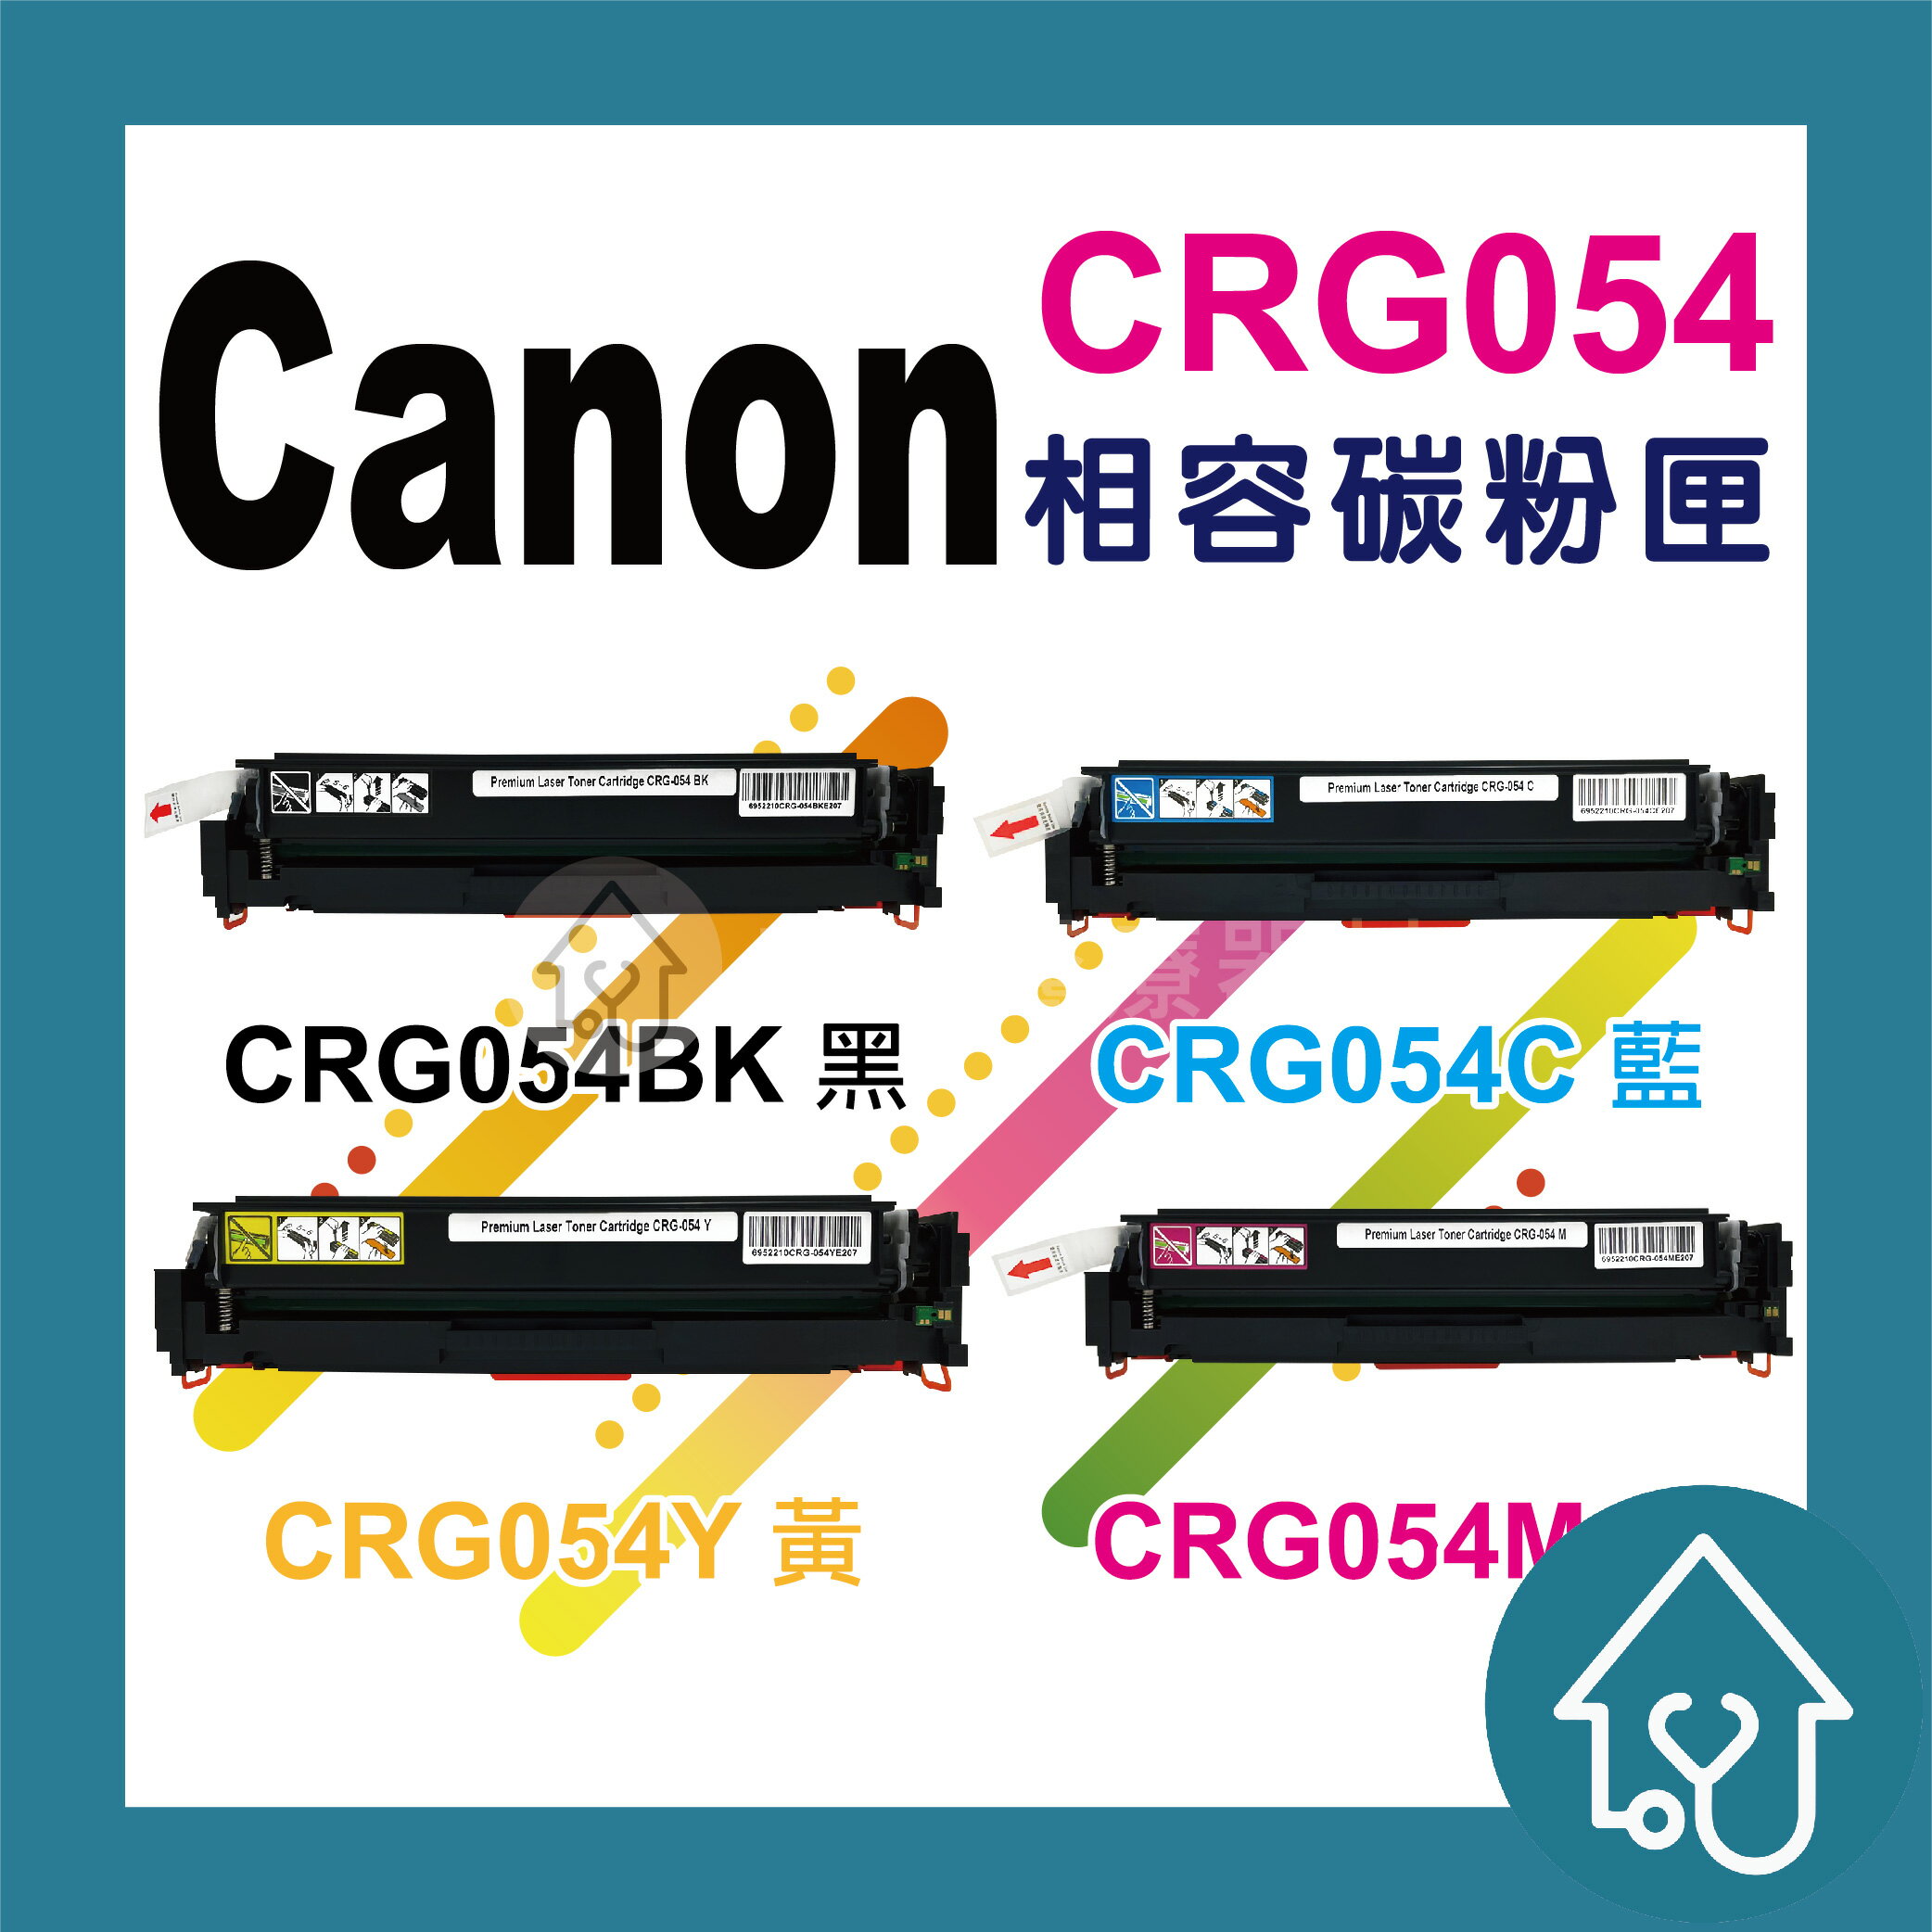 CANON CRG054 BK CRG054 C CRG054 M CRG054 Y CRG-054 副廠碳粉匣